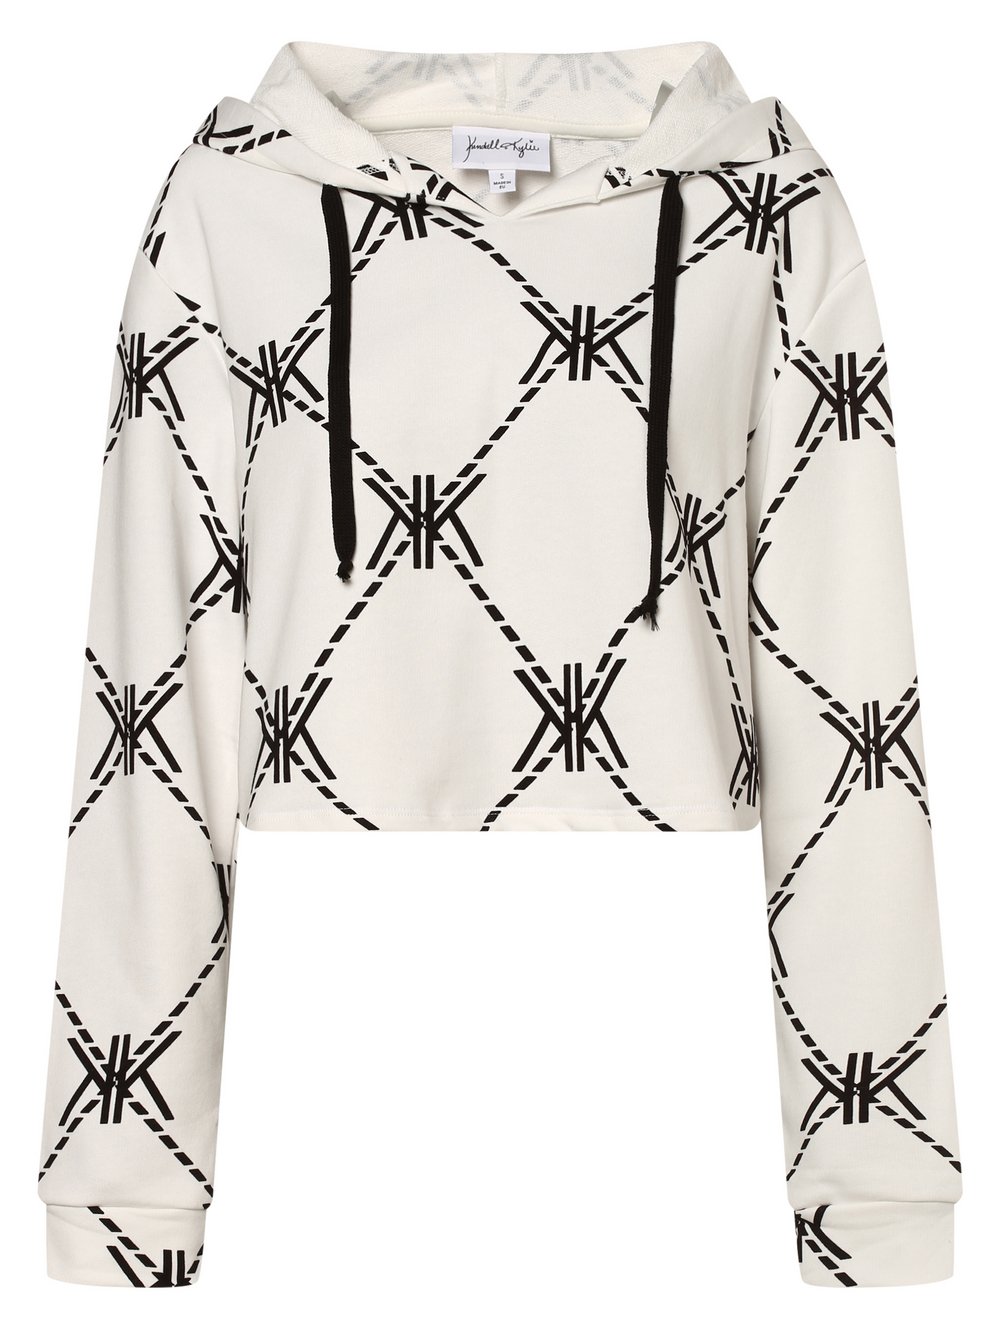 KENDALL + KYLIE - Damska bluza z kapturem, biały|wielokolorowy